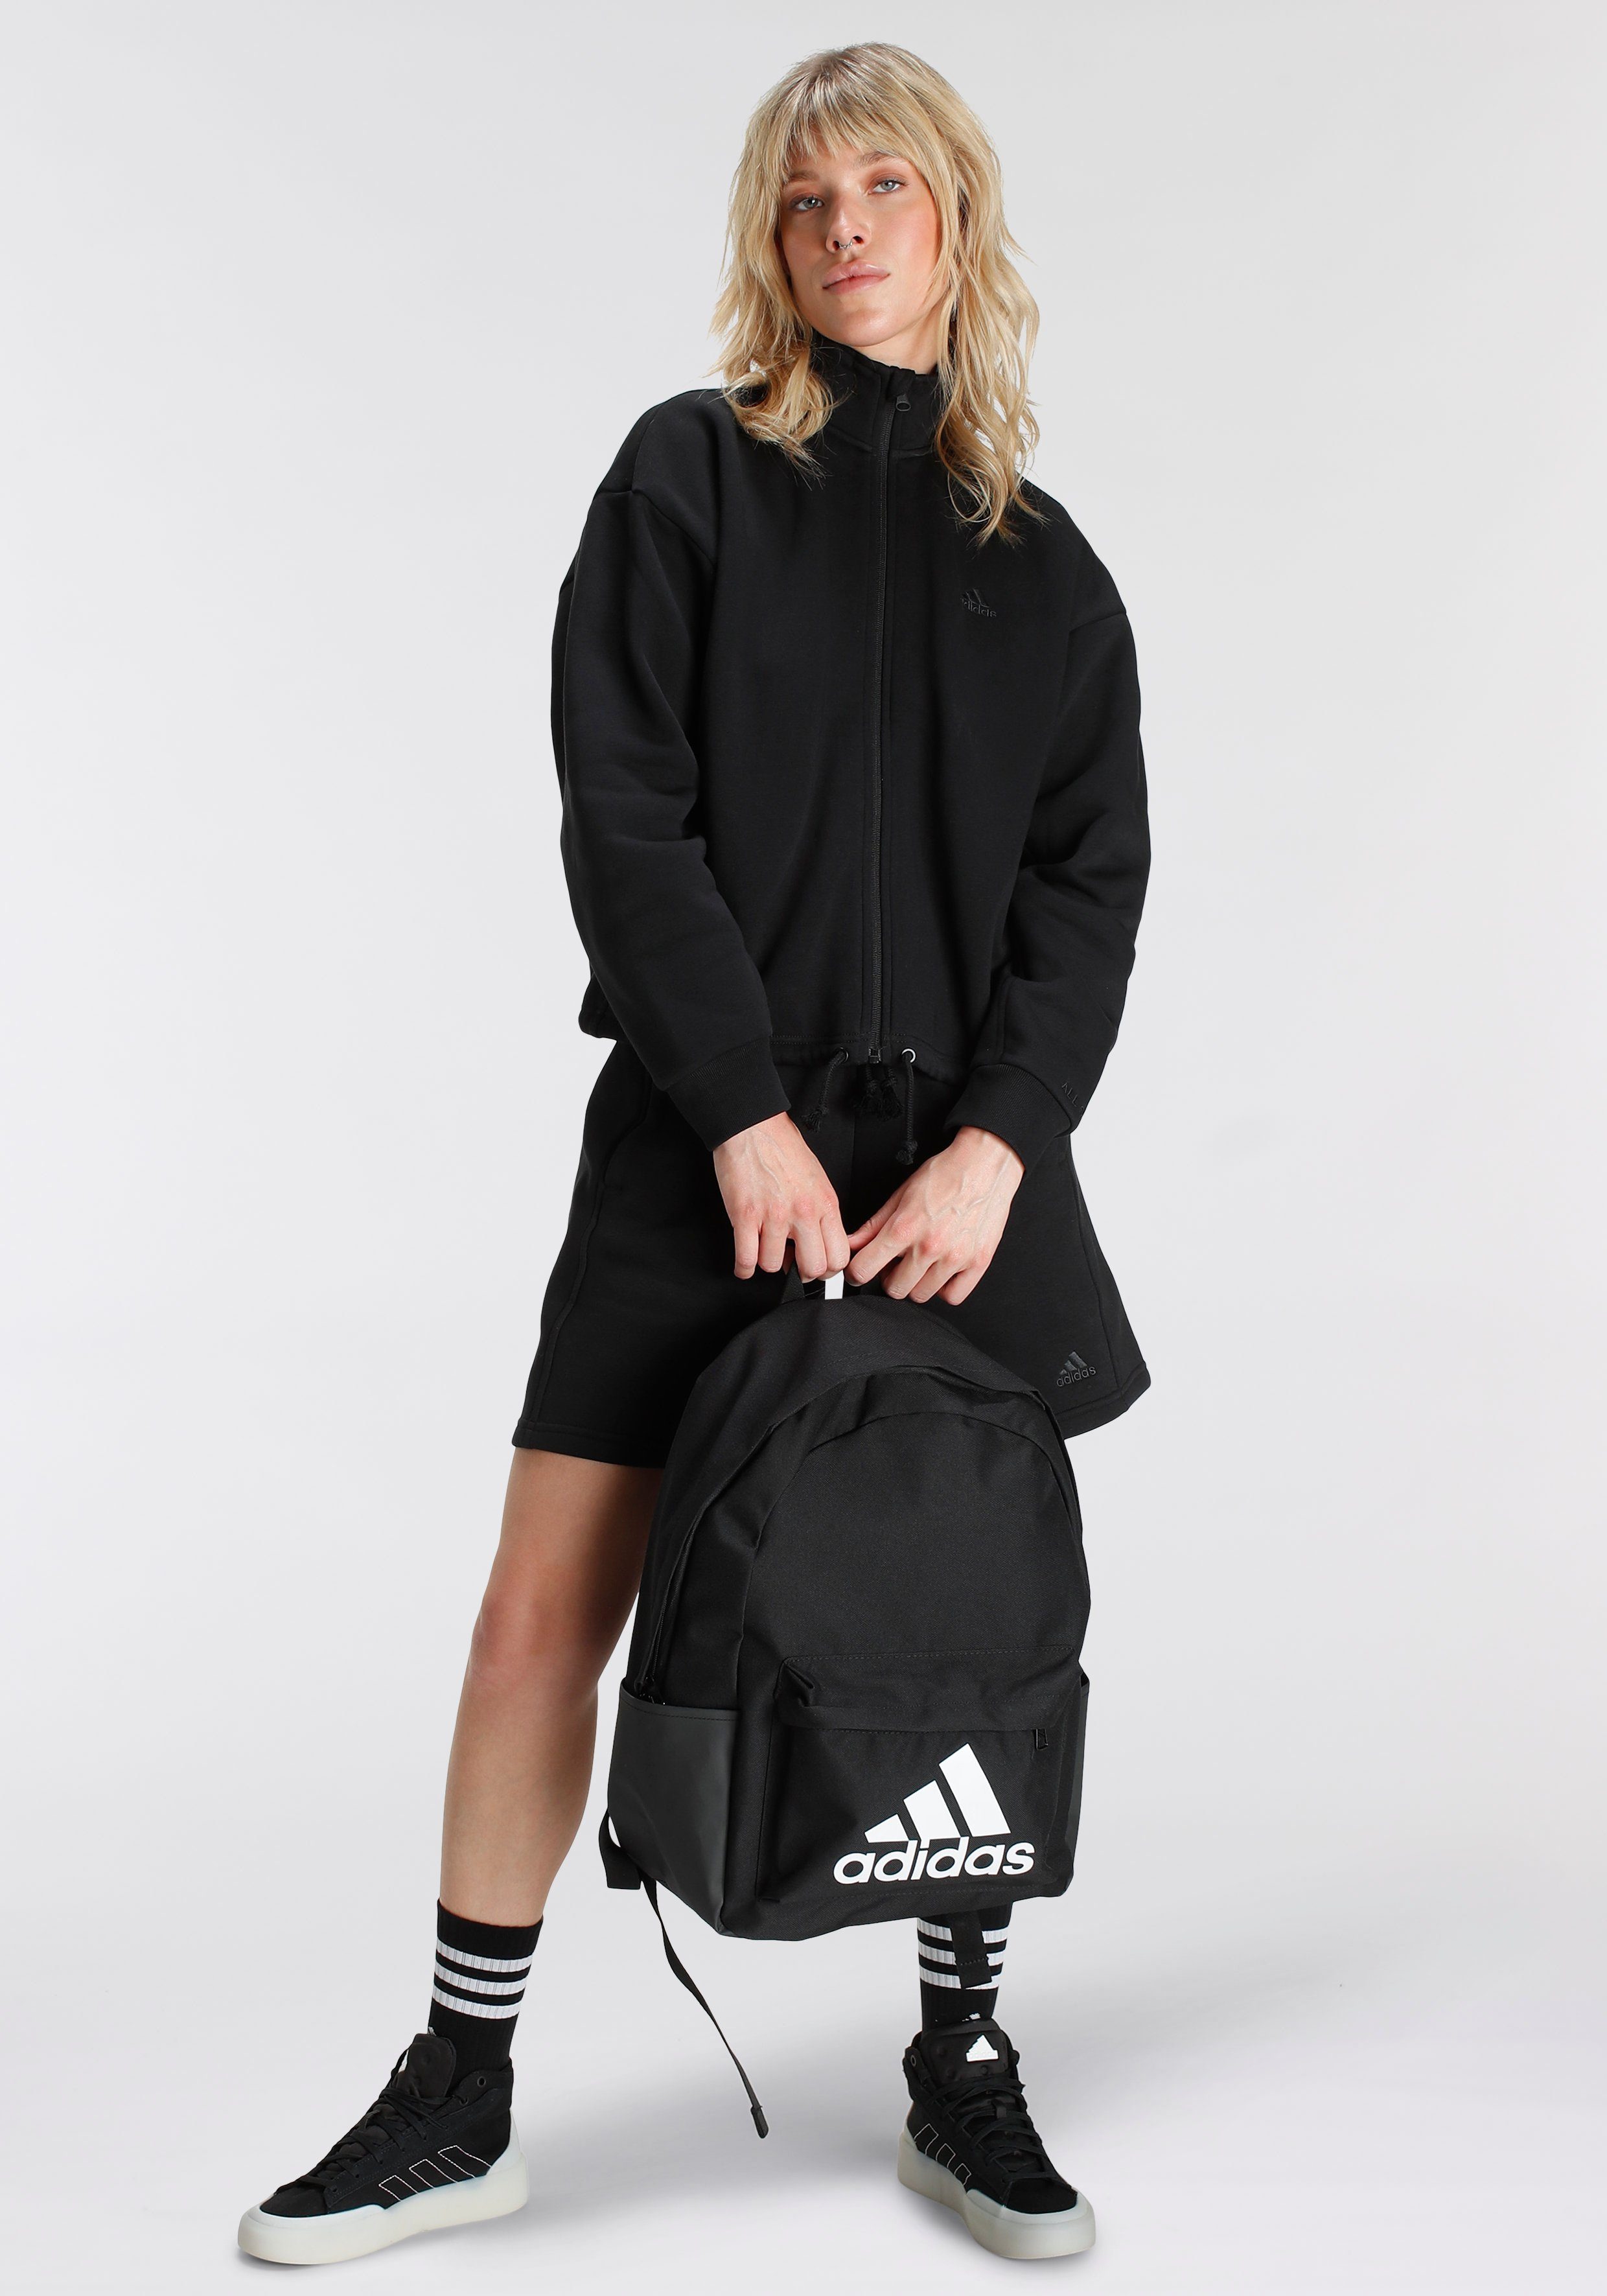 Black TRAININGSJACKE ALL SZN adidas Sportswear Outdoorjacke